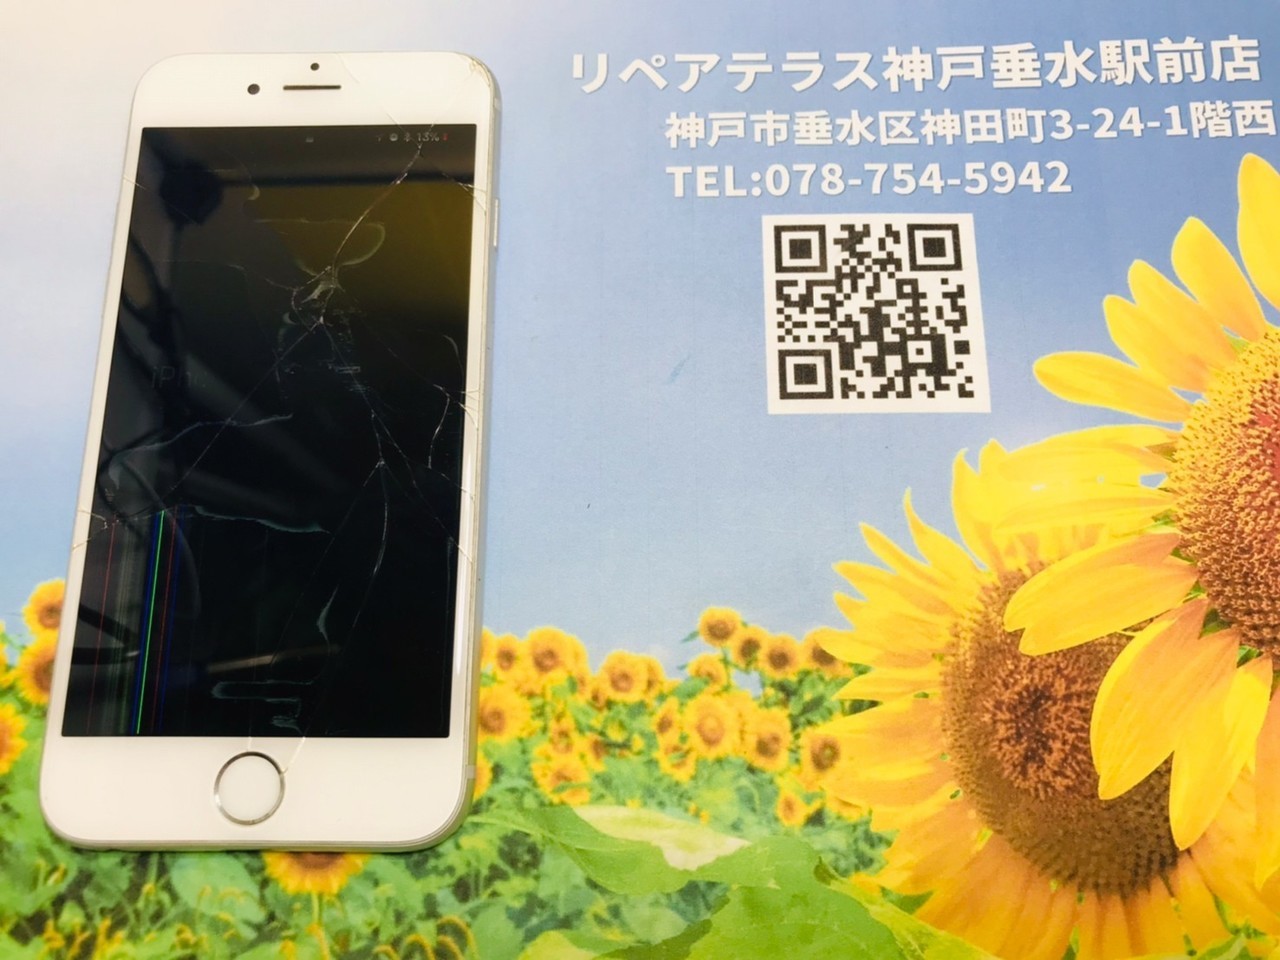 神戸垂水でiPhone6の画面修理とバッテリ0交換